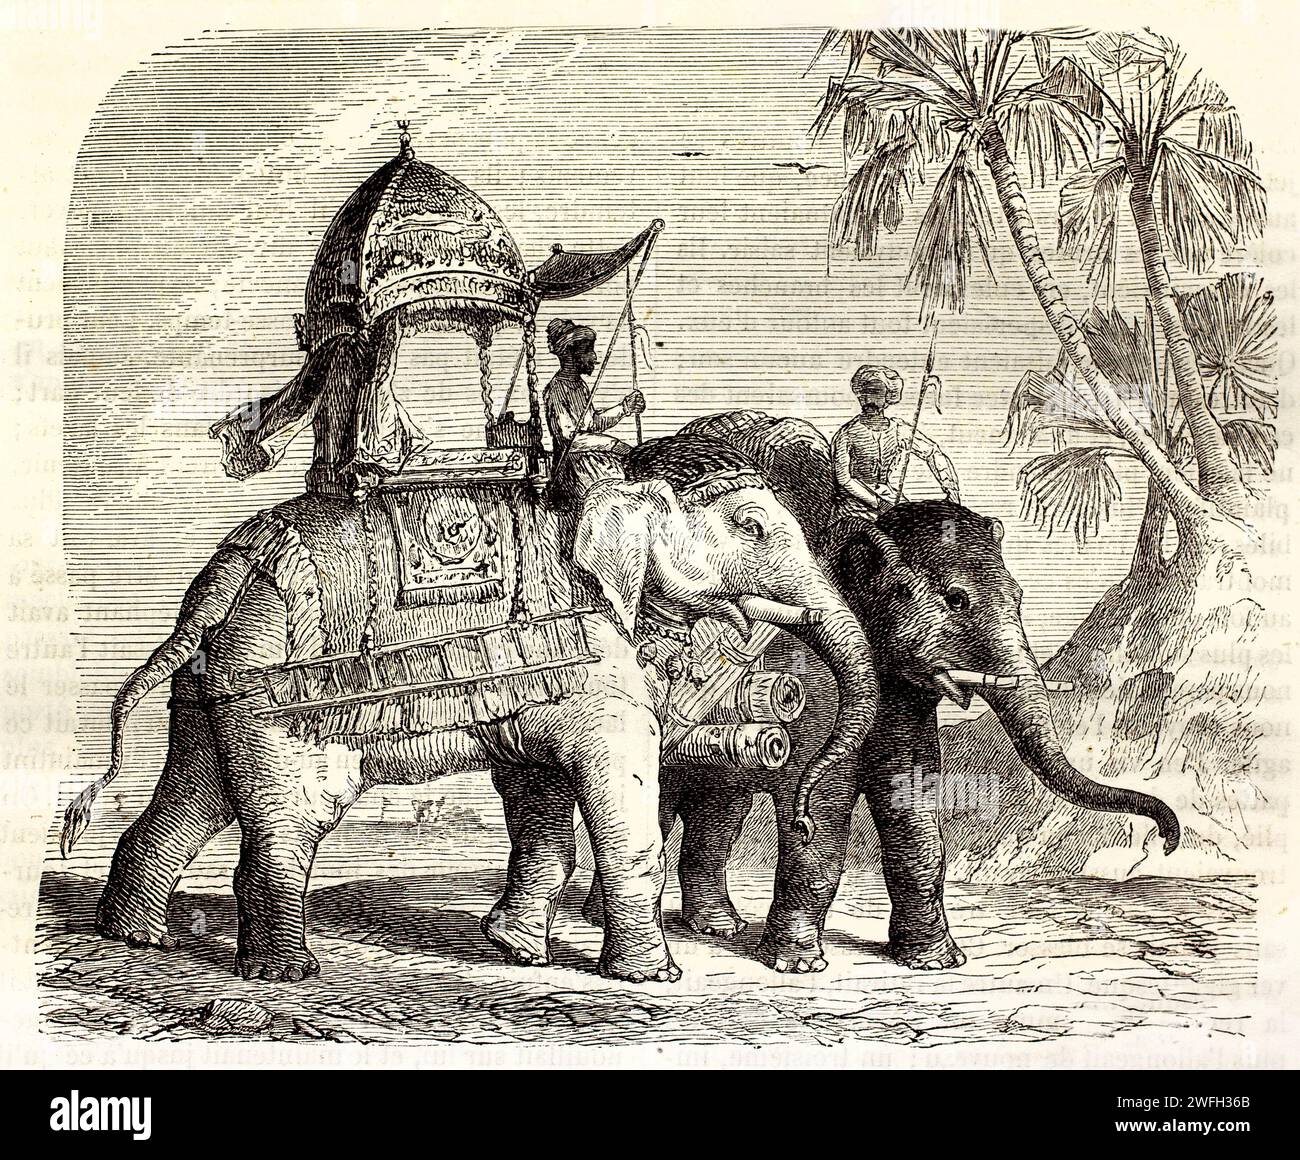 Alte gravierte Illustration von Elephas Maximus in Indien. Erstellt von Jolie, veröffentlicht auf Brehm, Les Mammifers, Baillière et fils, Paris, 1878 Stockfoto